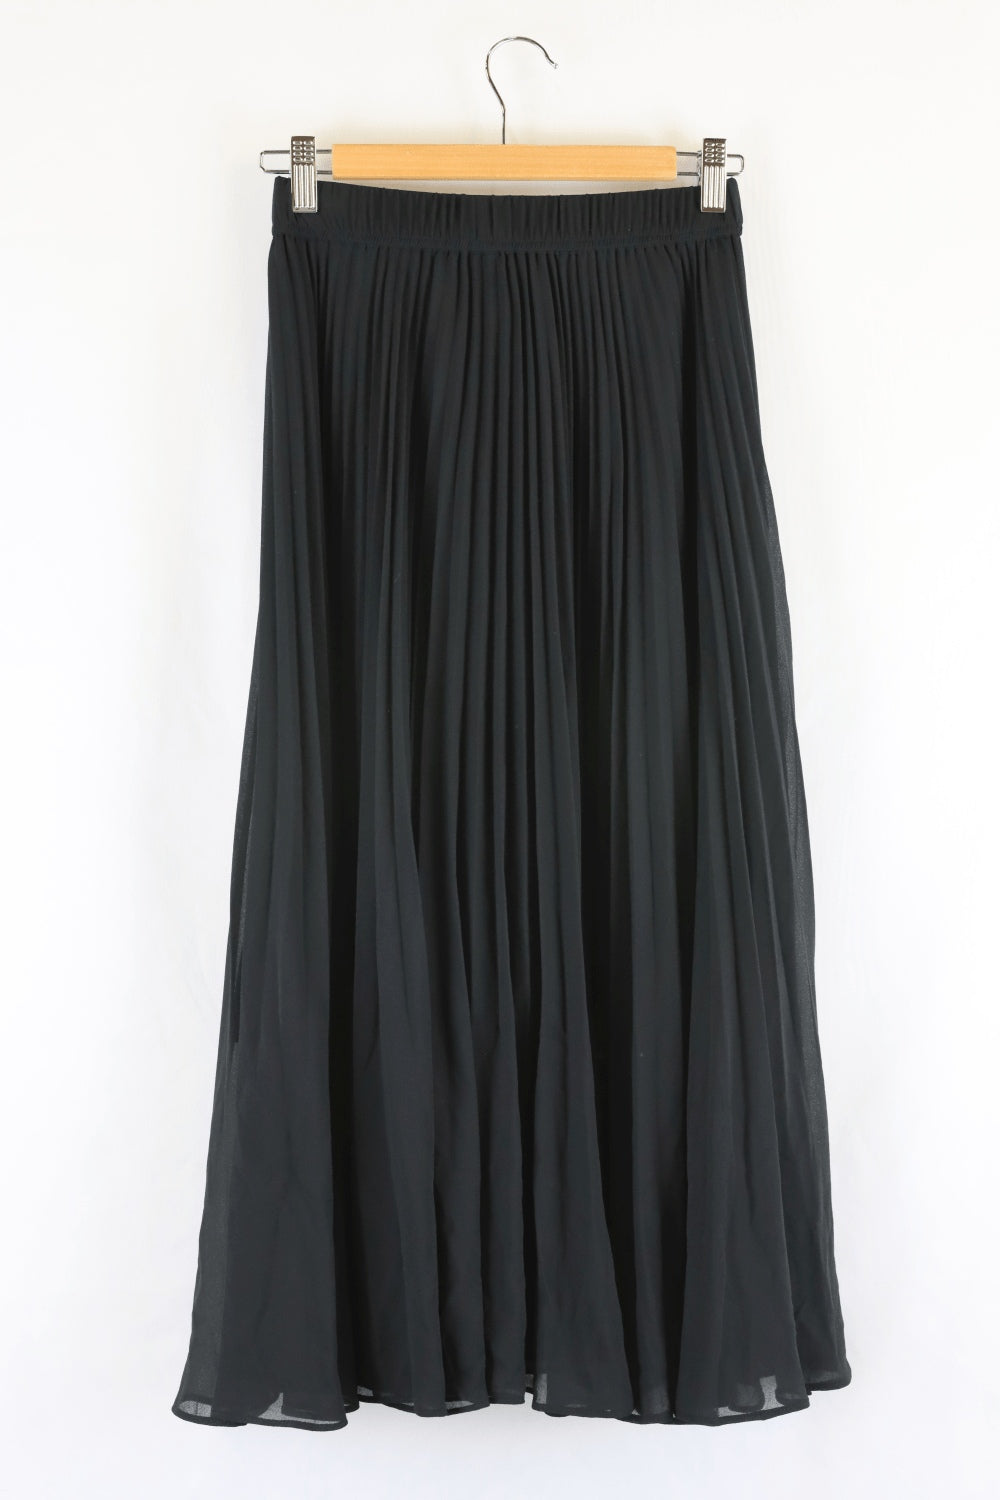 Forever New Black Pleated Skirt 6